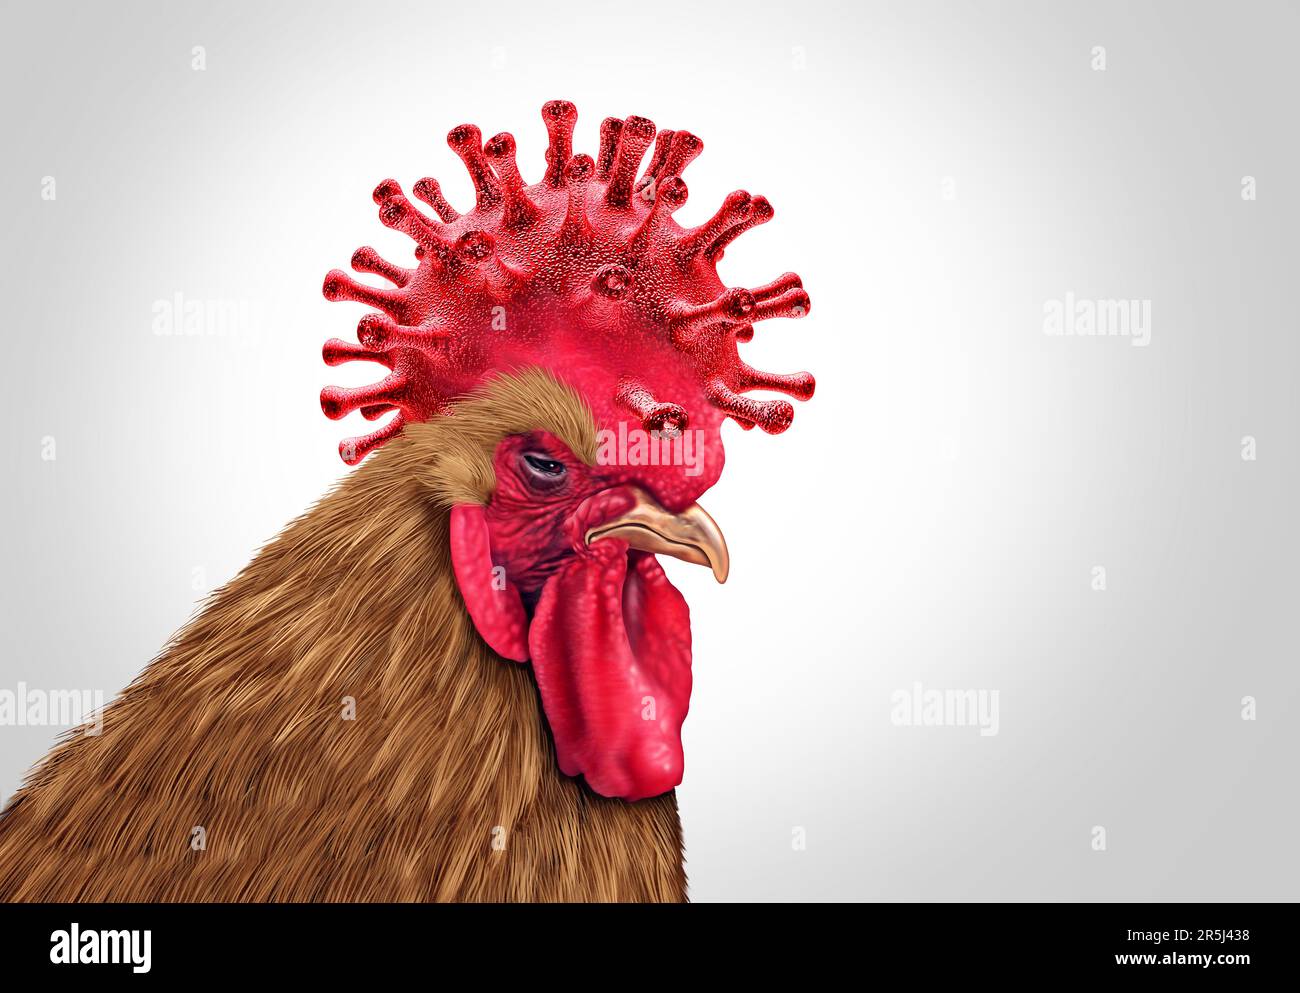 Éclosion du virus de la grippe aviaire et crise de la grippe aviaire en tant que virus de la volaille infecté comme bétail de poulet comme risque pour la santé des éclosions d'infection mondiale Banque D'Images